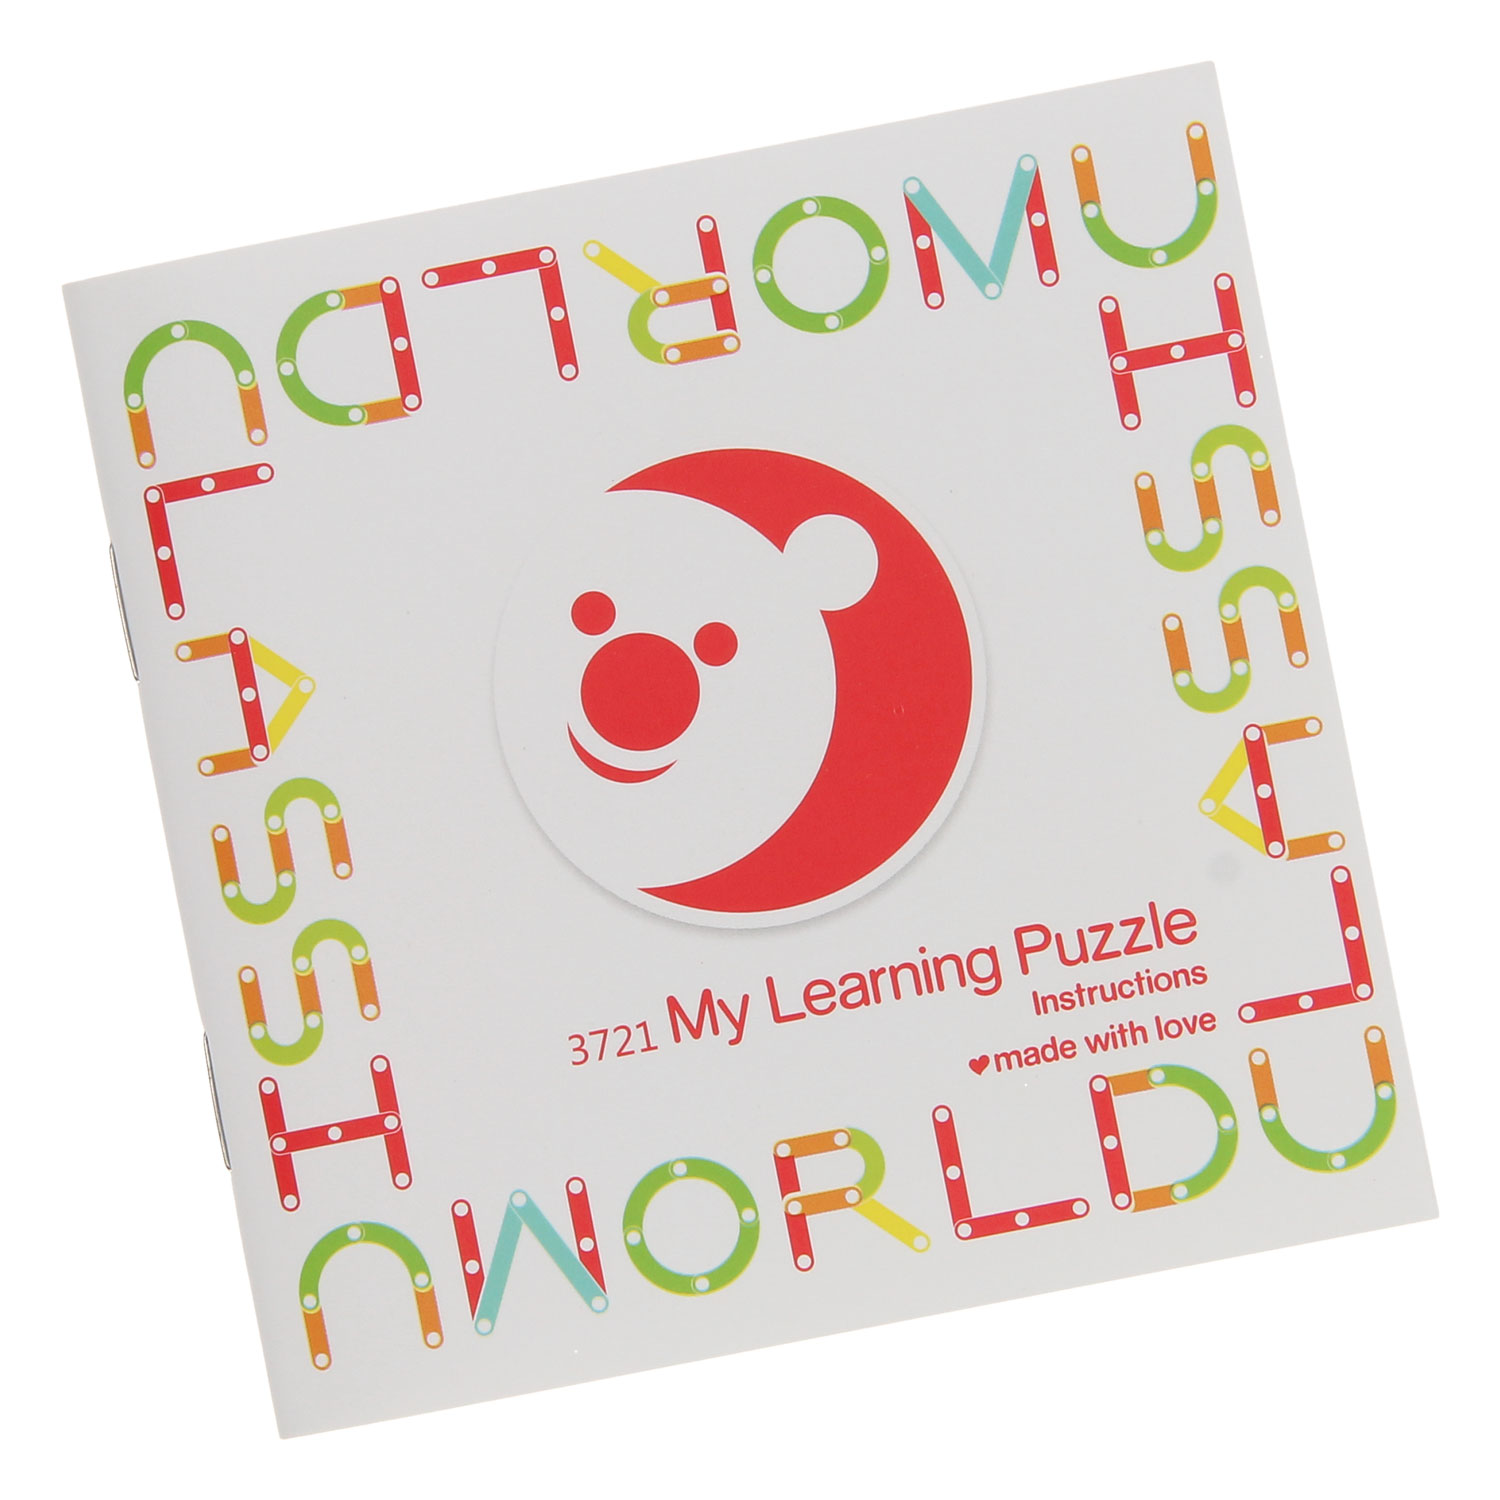 Classic World Mon puzzle d'apprentissage en bois, 29 pièces.